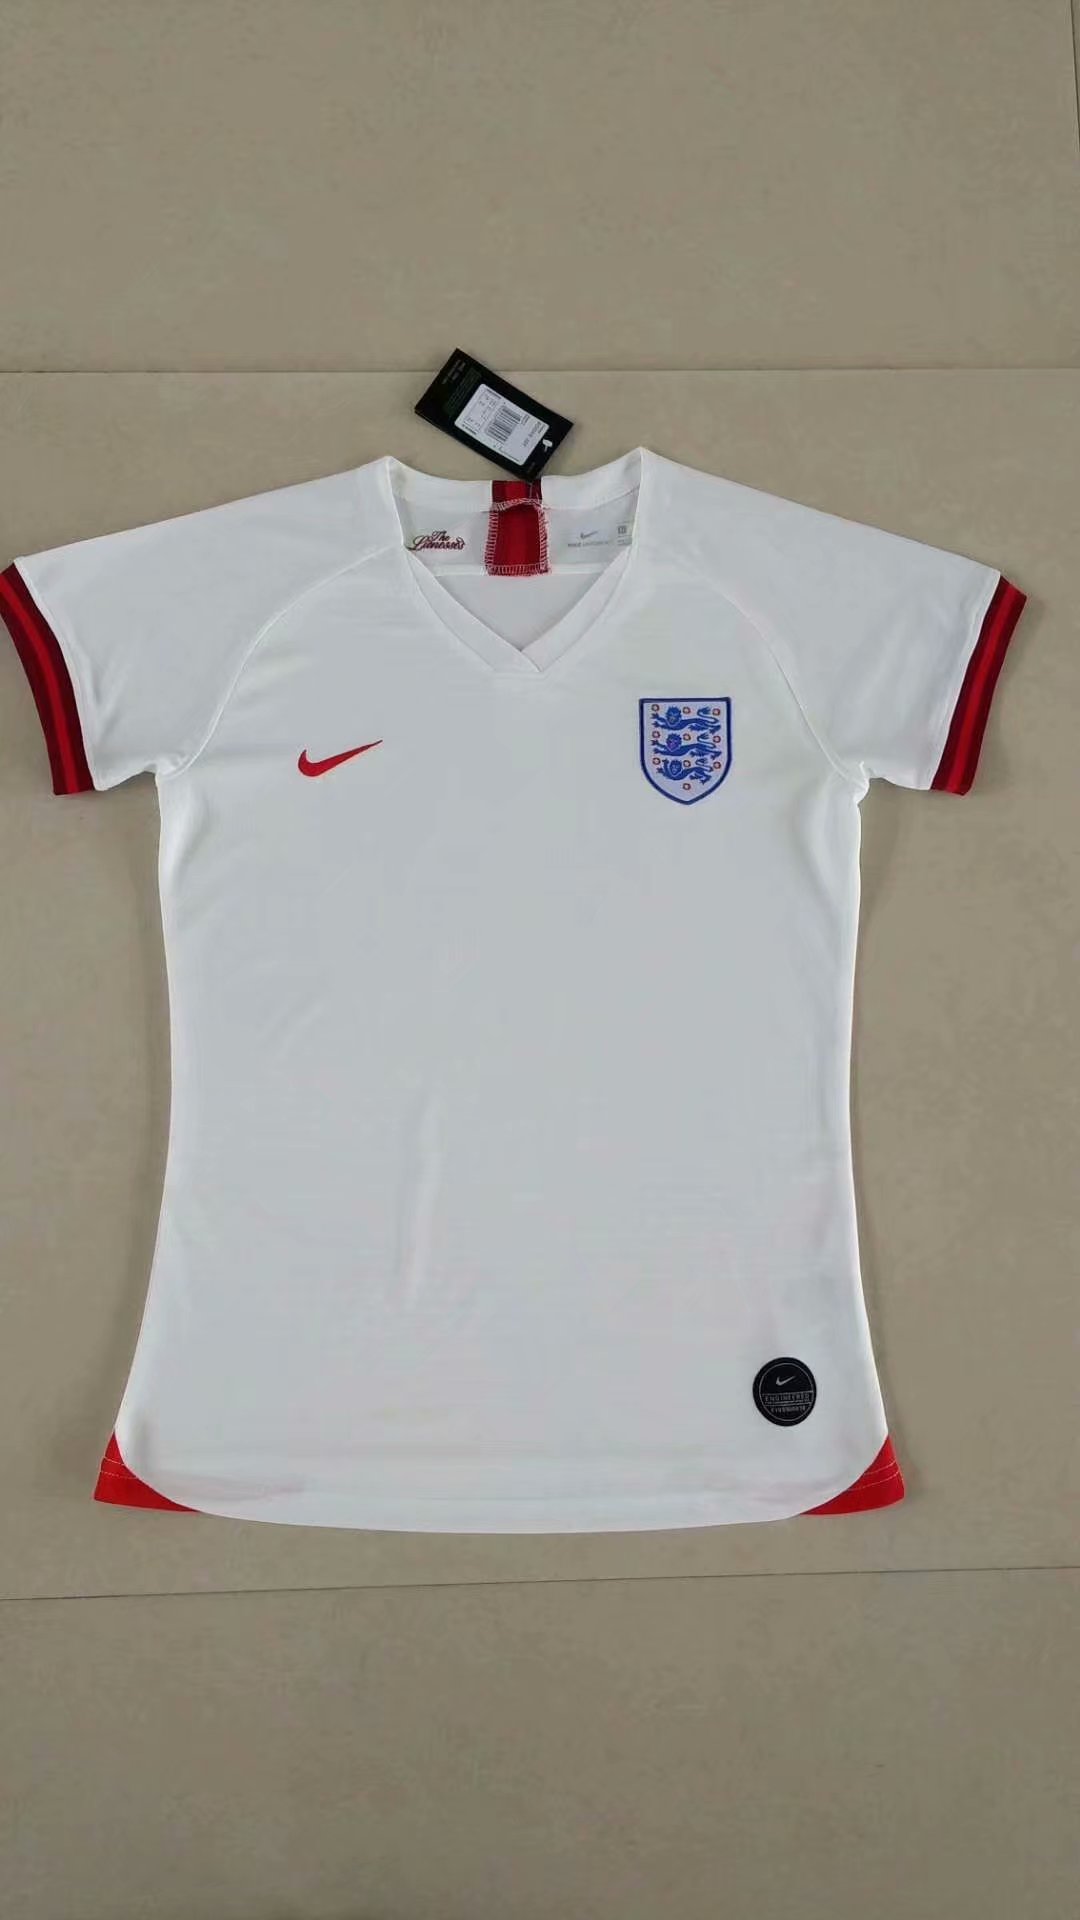 england women's soccer jersey